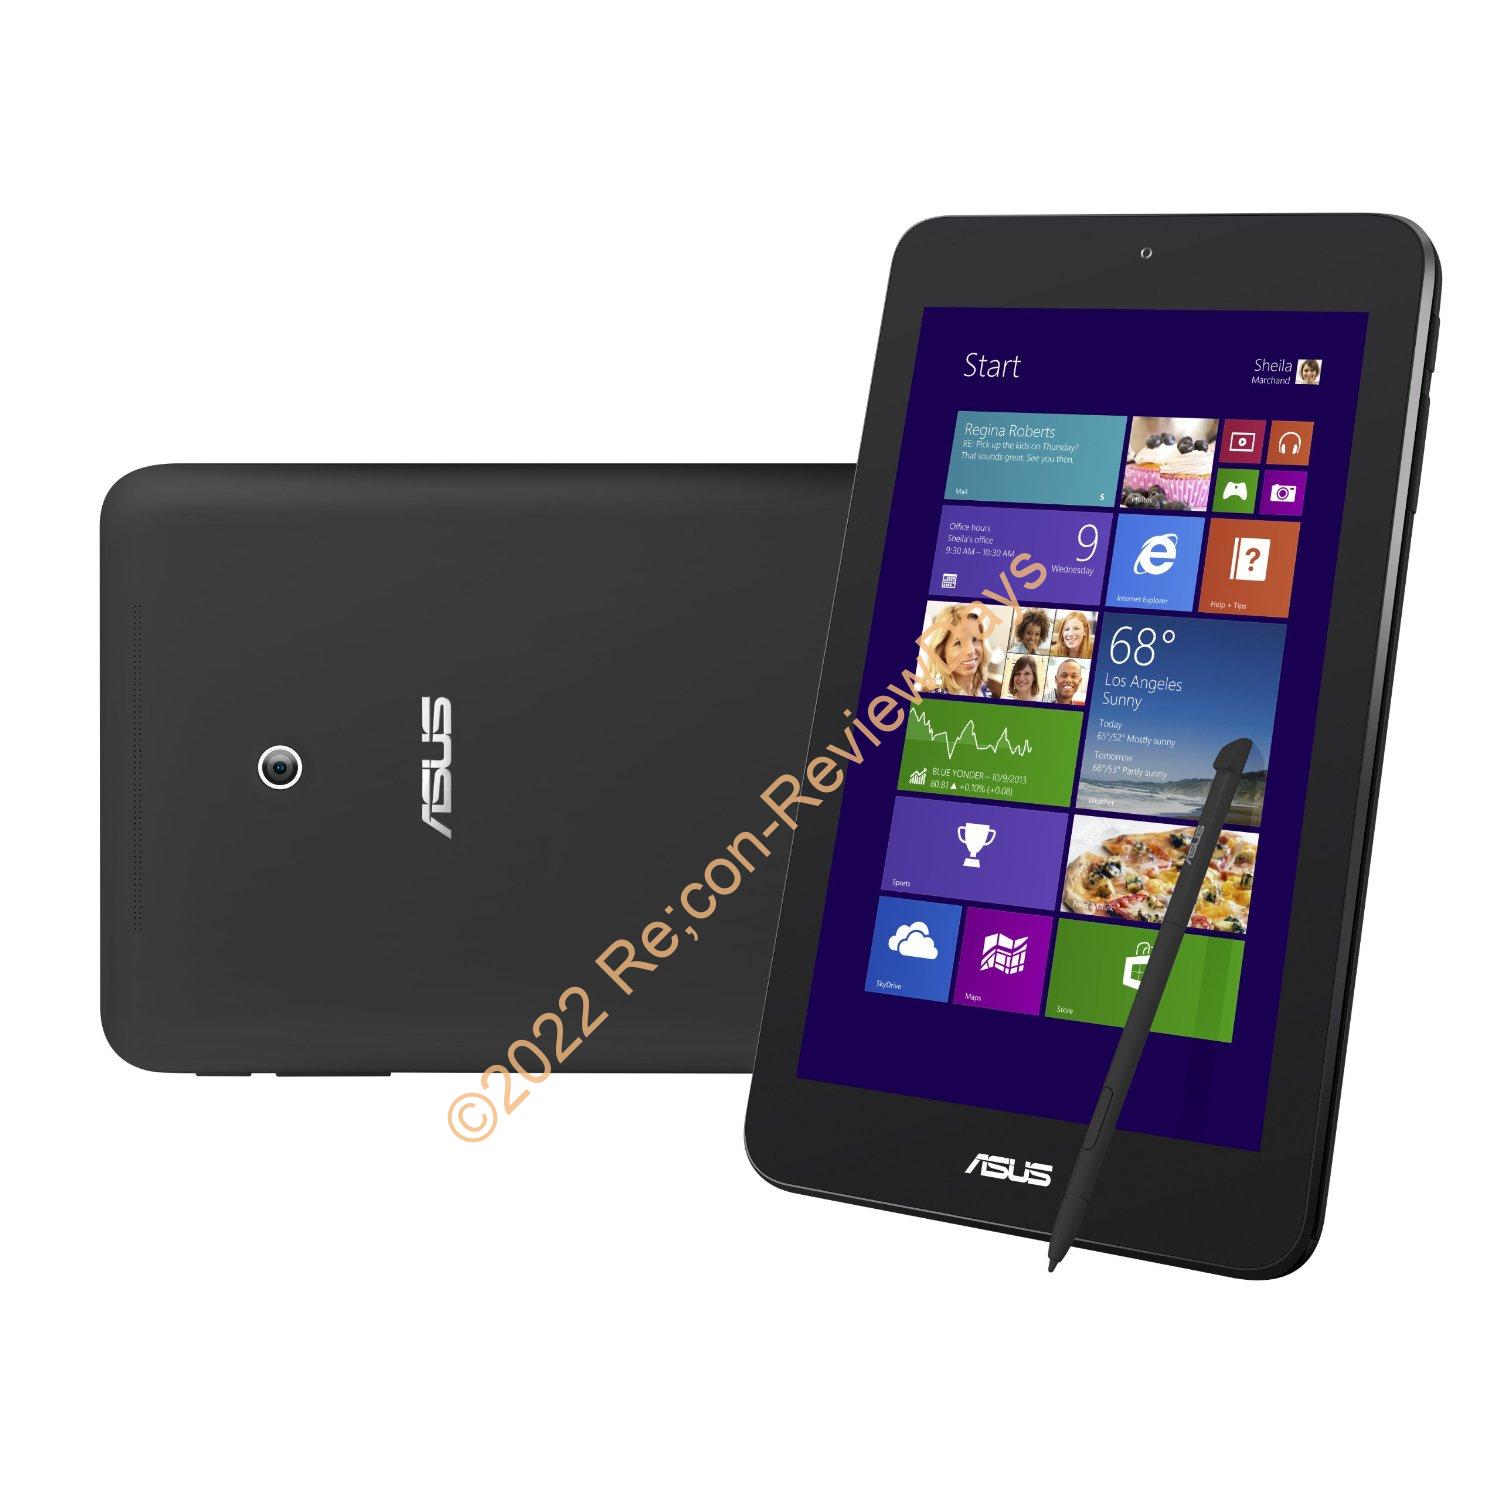 ASUS デジタイザ内蔵タブレット「VivoTab Note 8」の32GB Office Personal版をJoshin Webで予約開始、価格は39,800円から